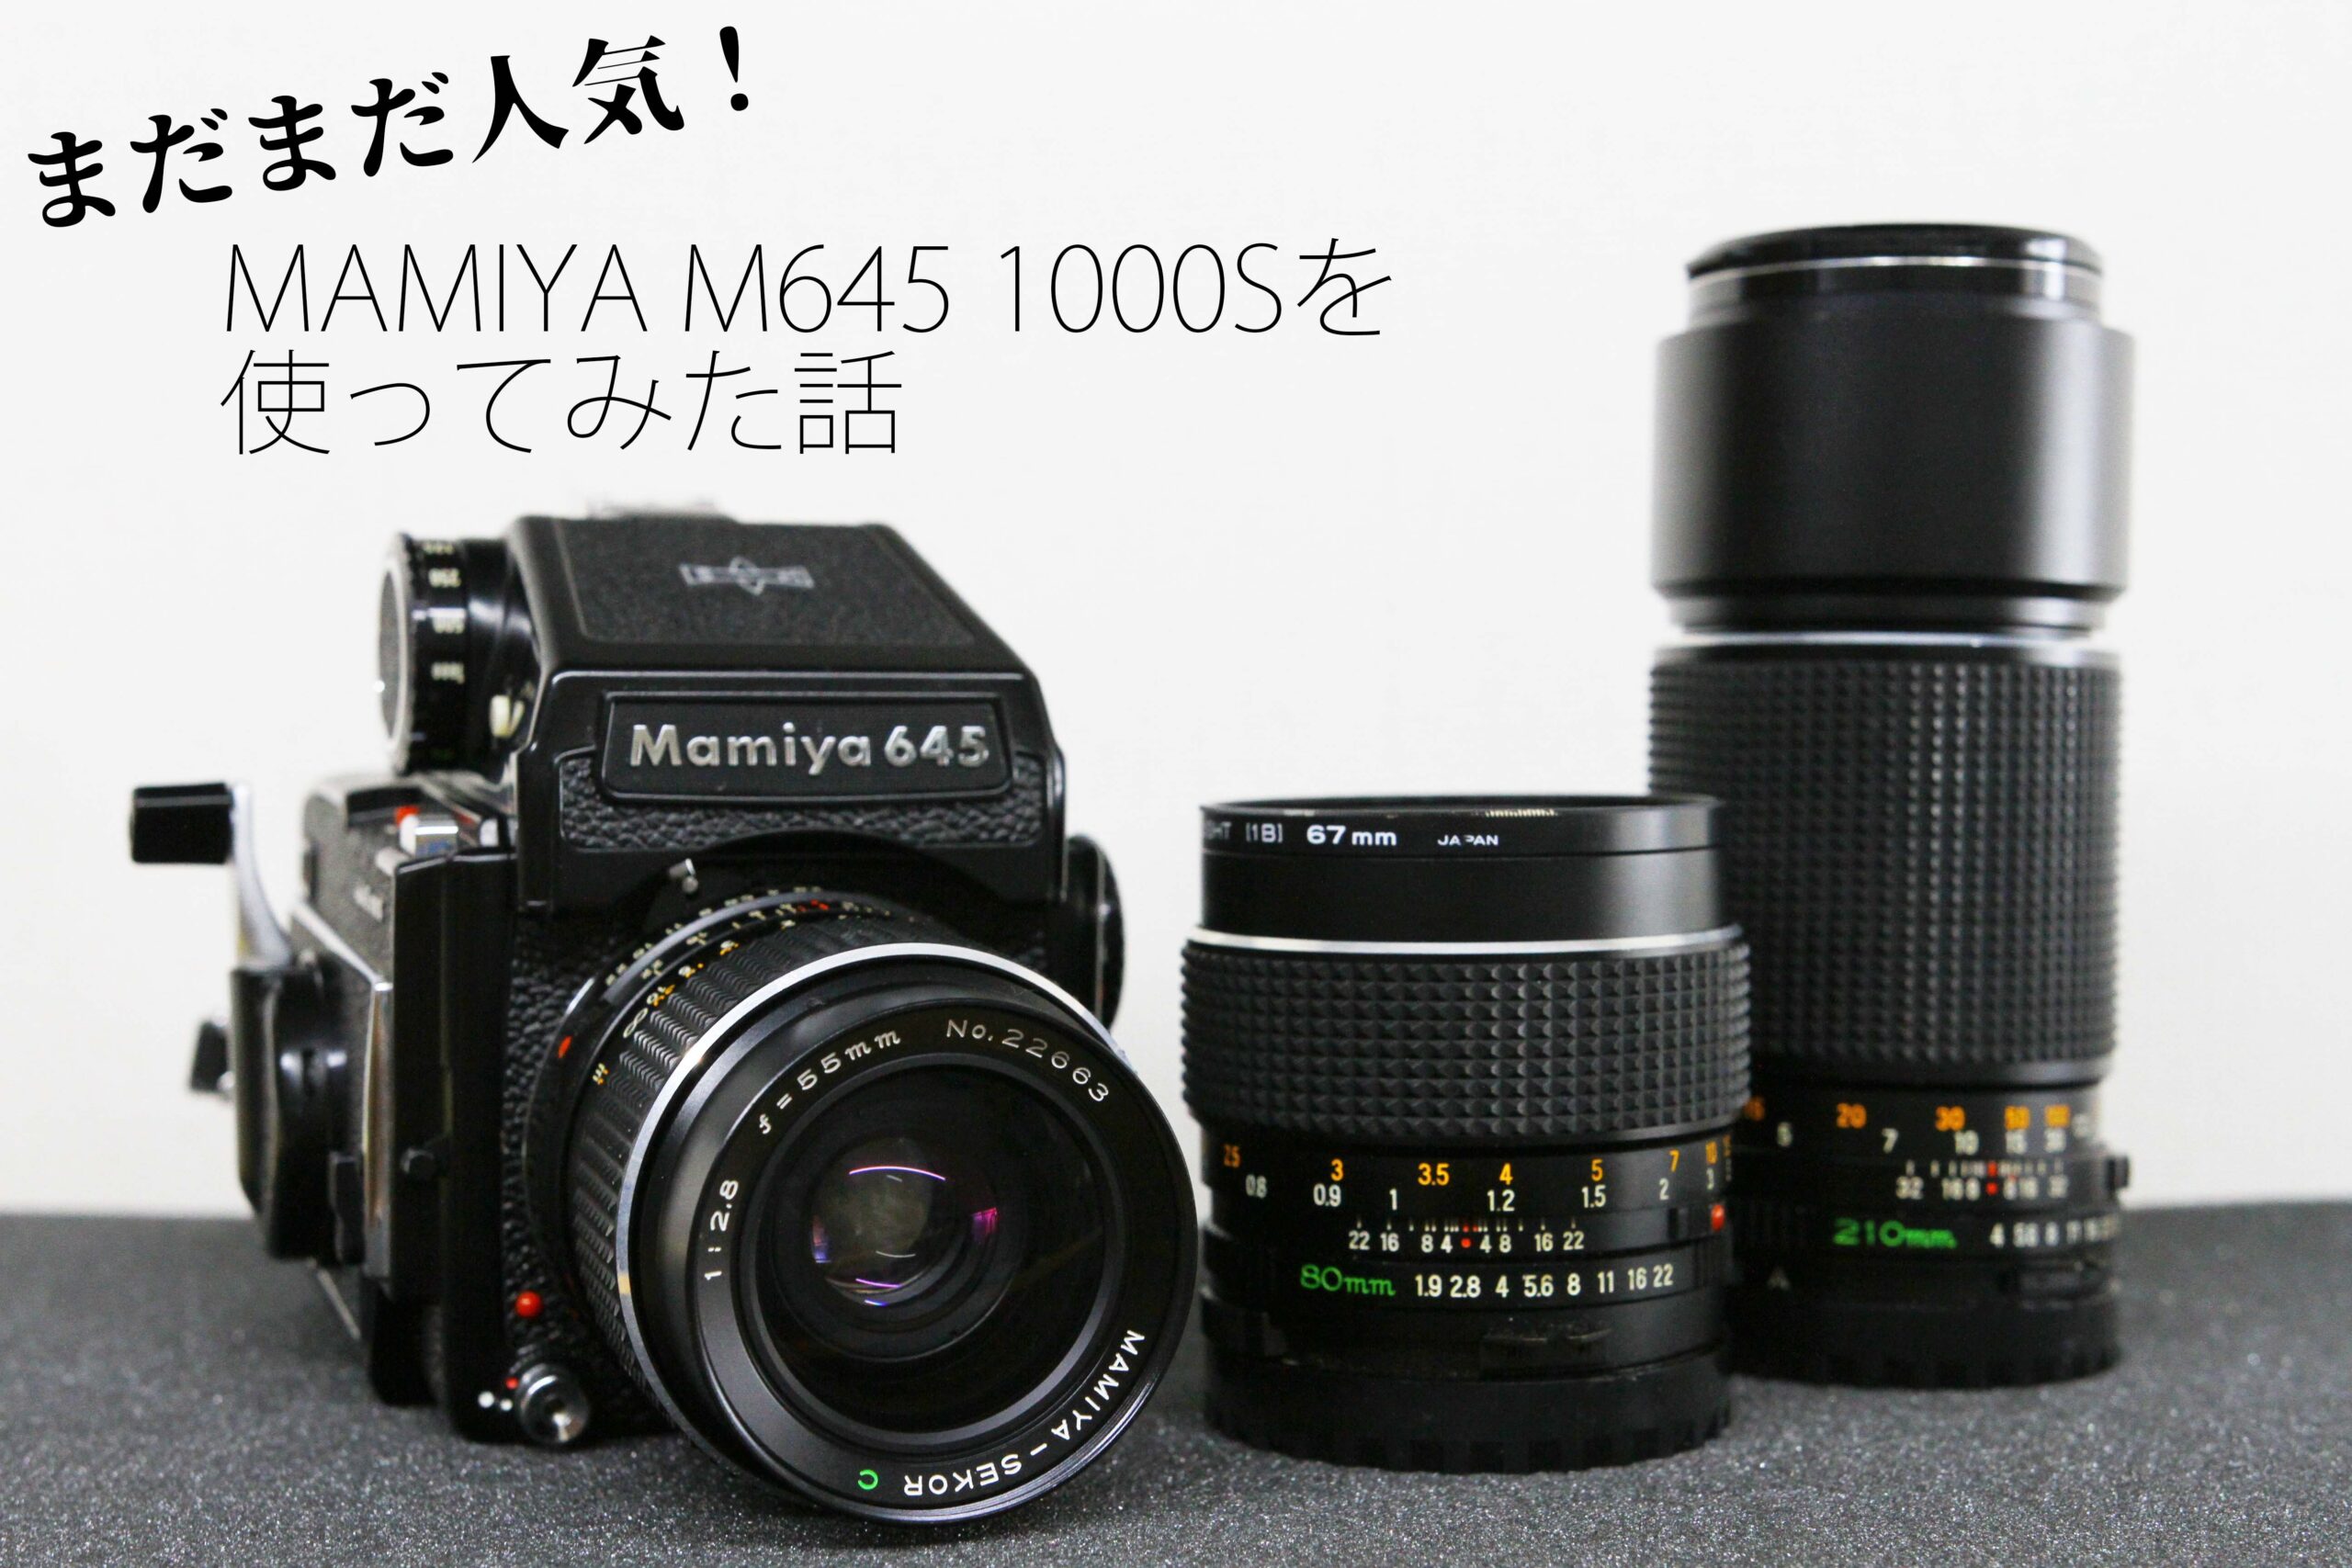 マミヤ M645 1000S F2.8 80mm F4 210mm 中判カメラ-